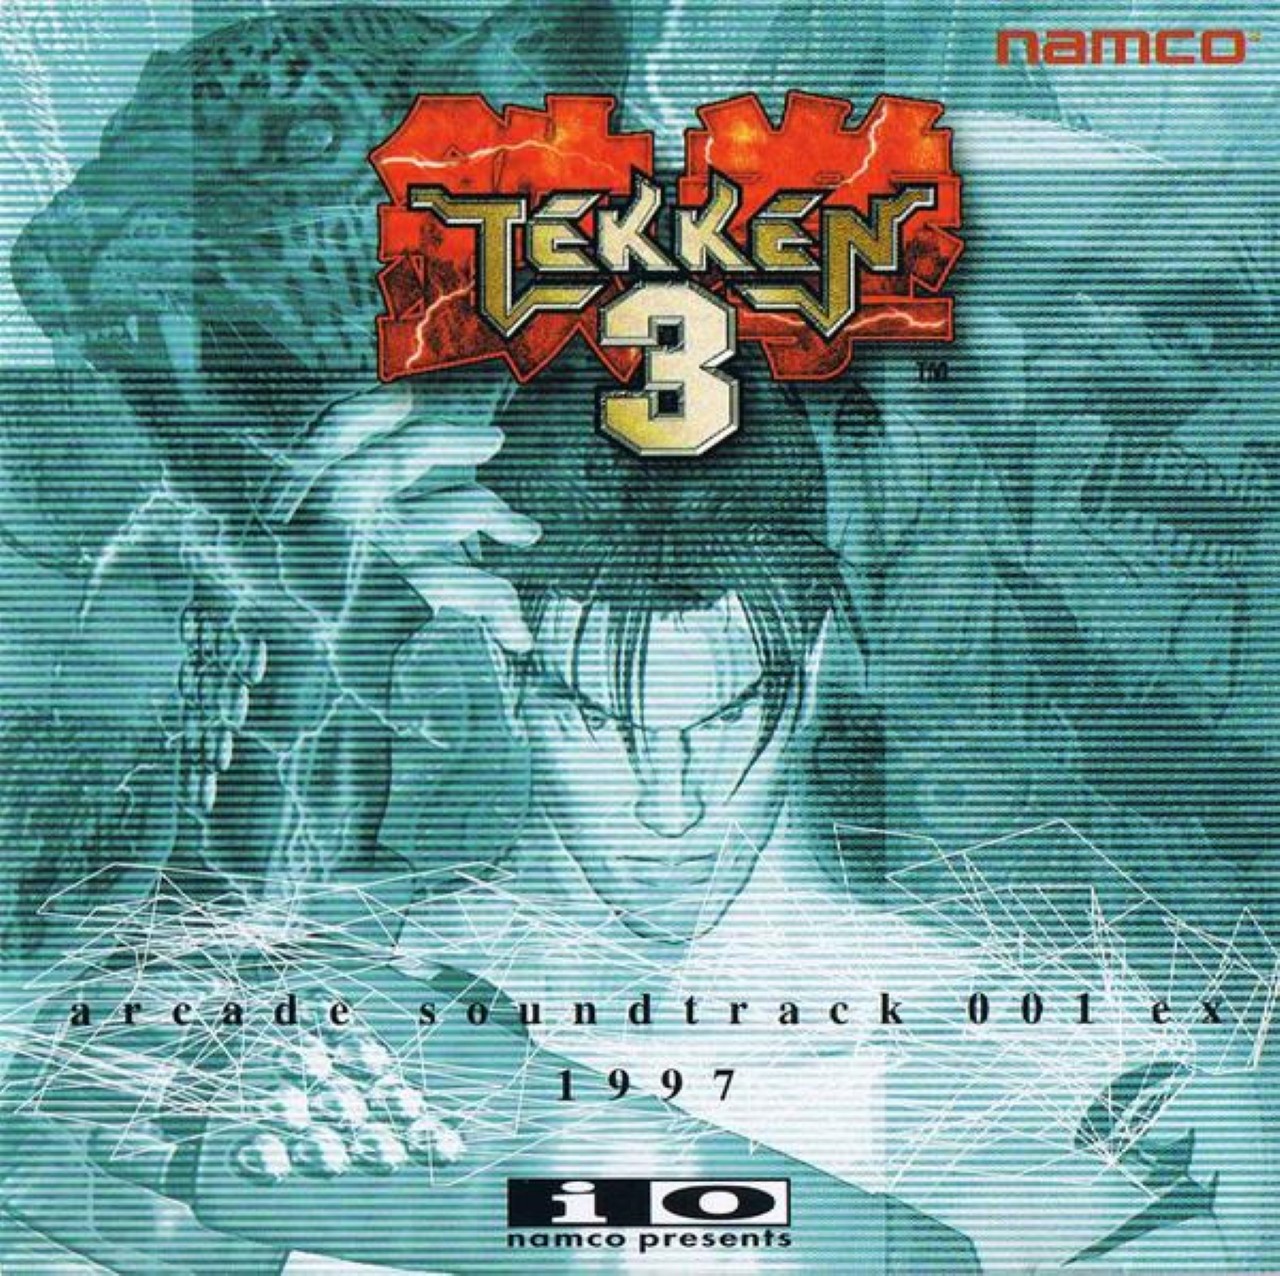 download tekken 3 arcade